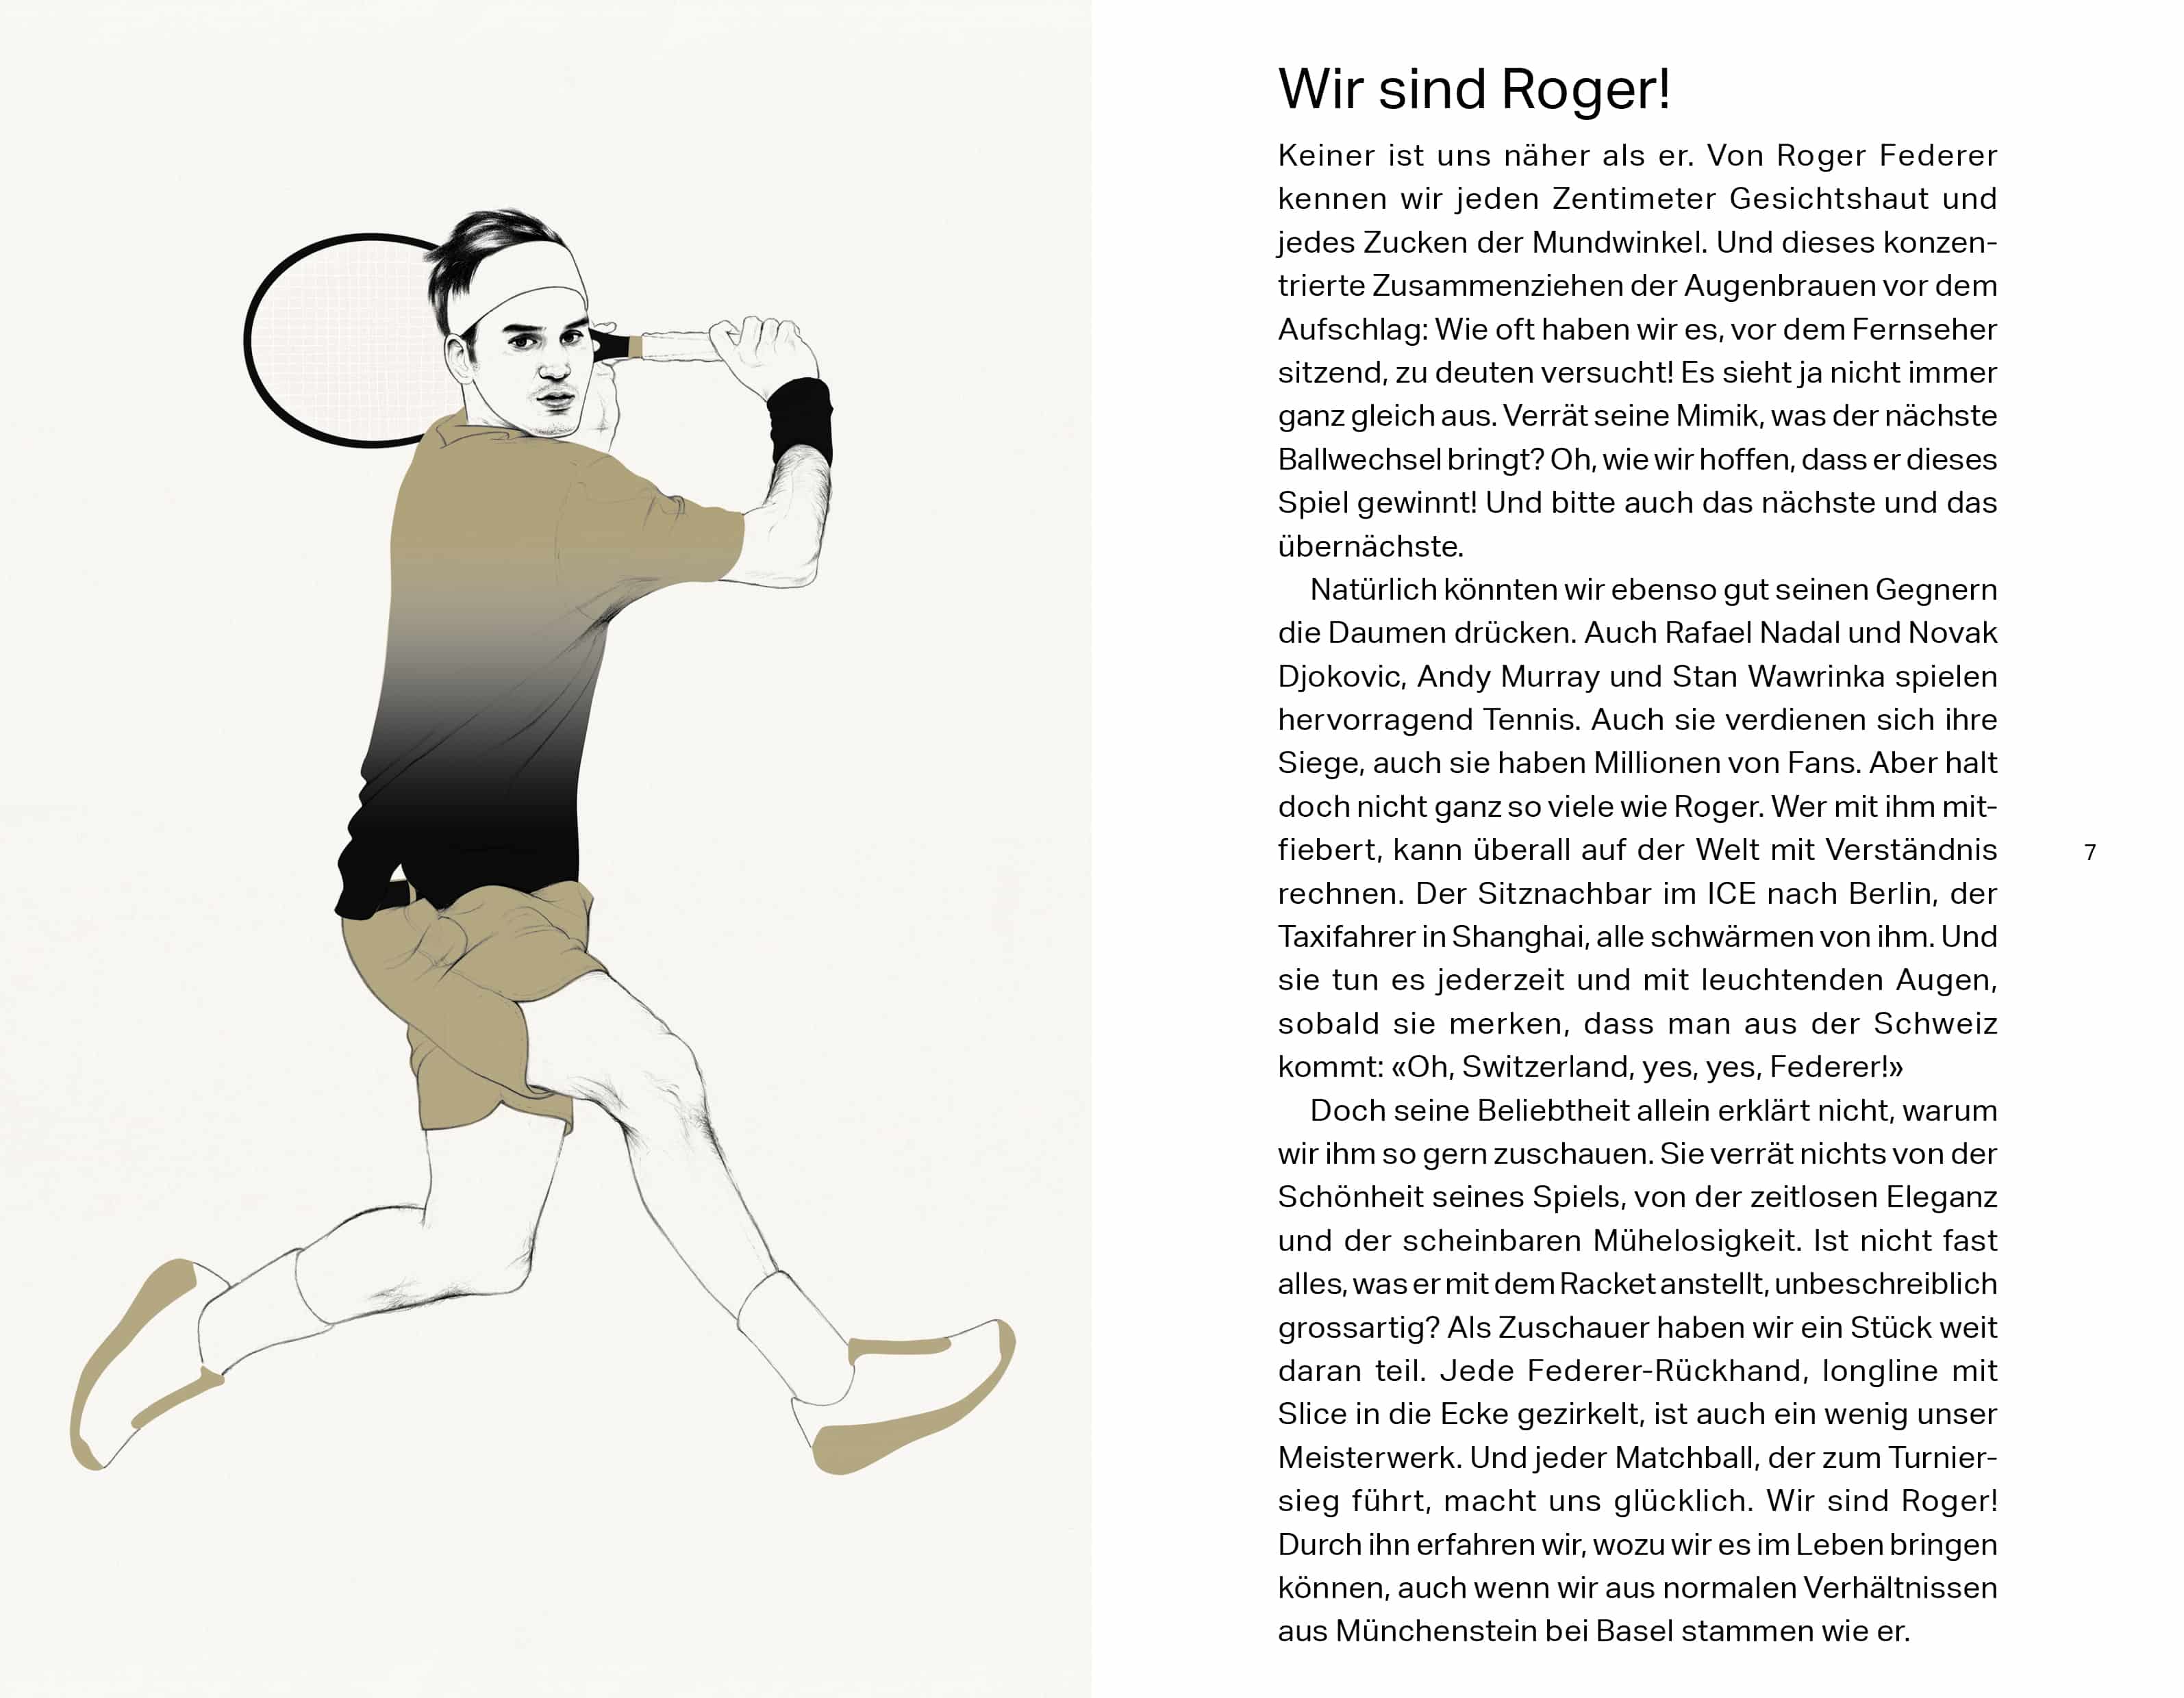 Wir sind Roger! Die Geschichte des Tenniskönigs Roger Federer